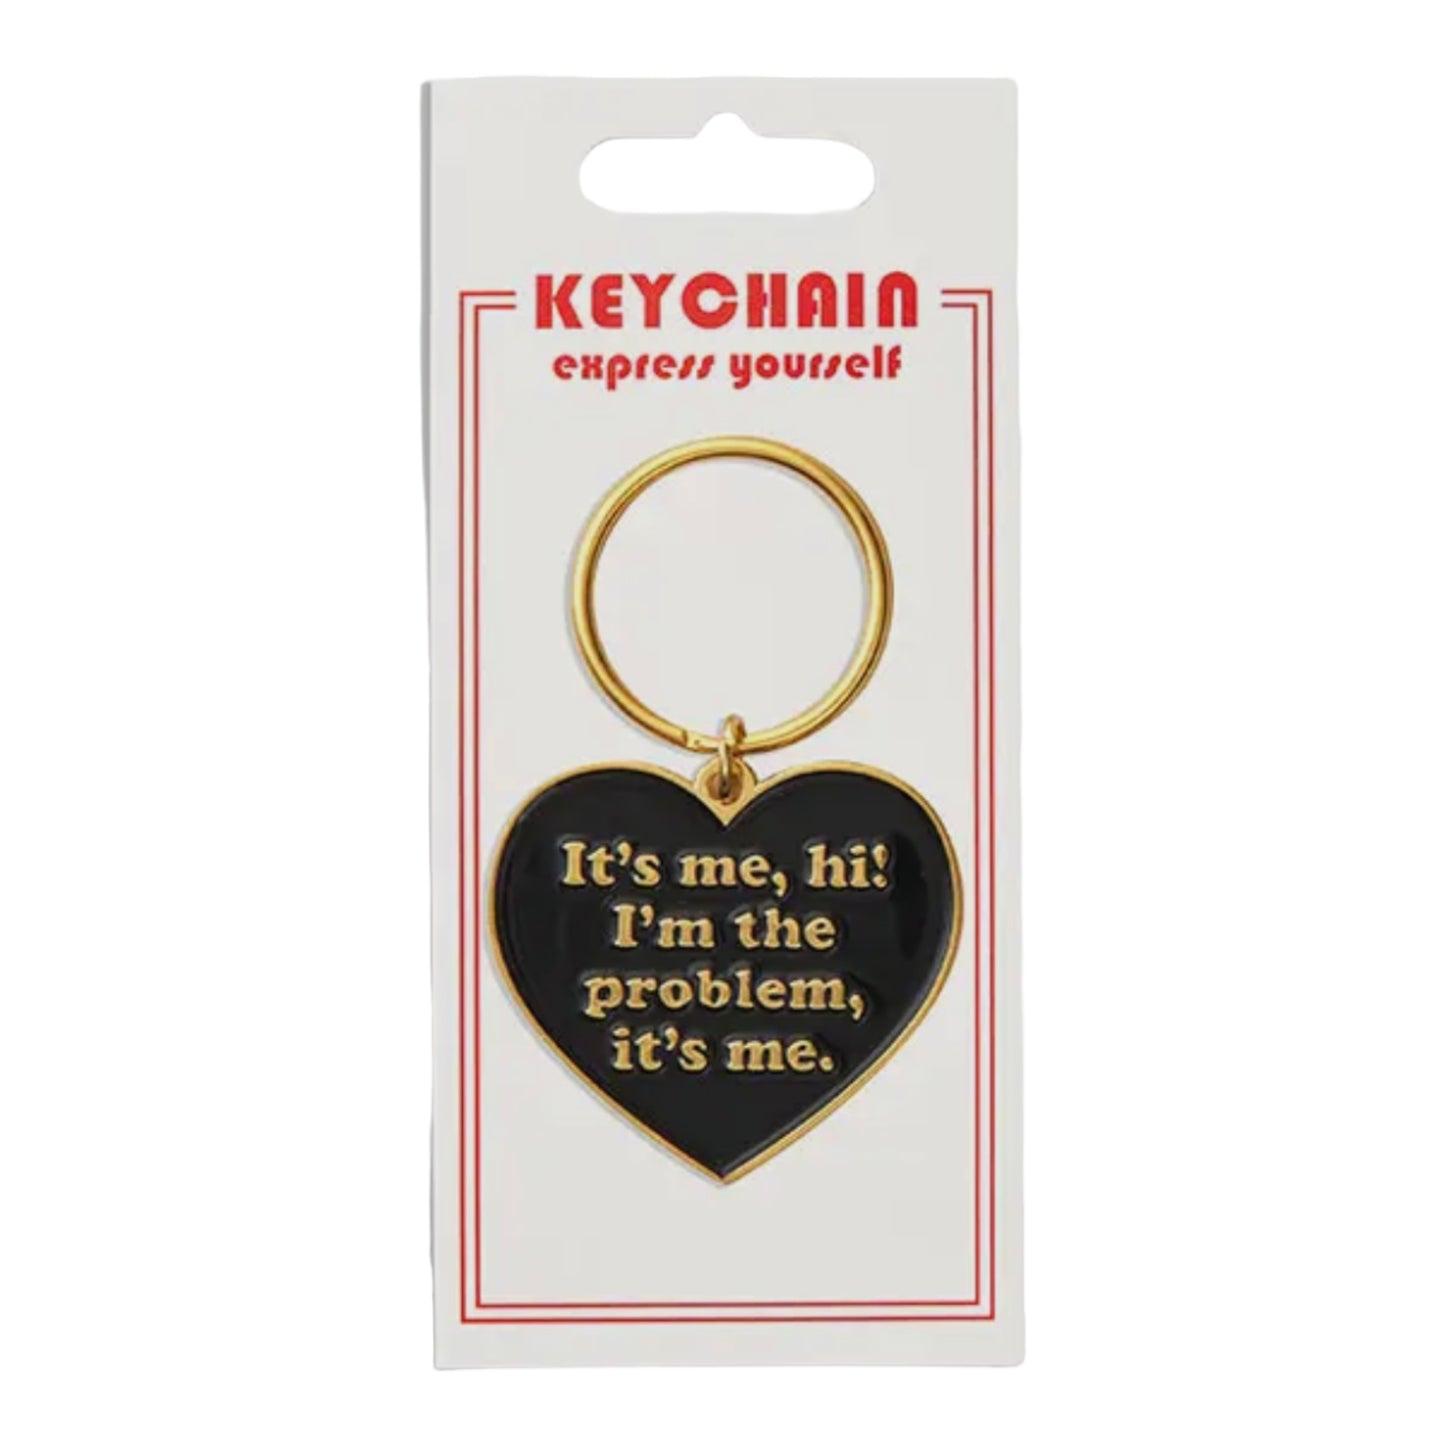 It’s me, hi! I’m the problem, it’s me keychain